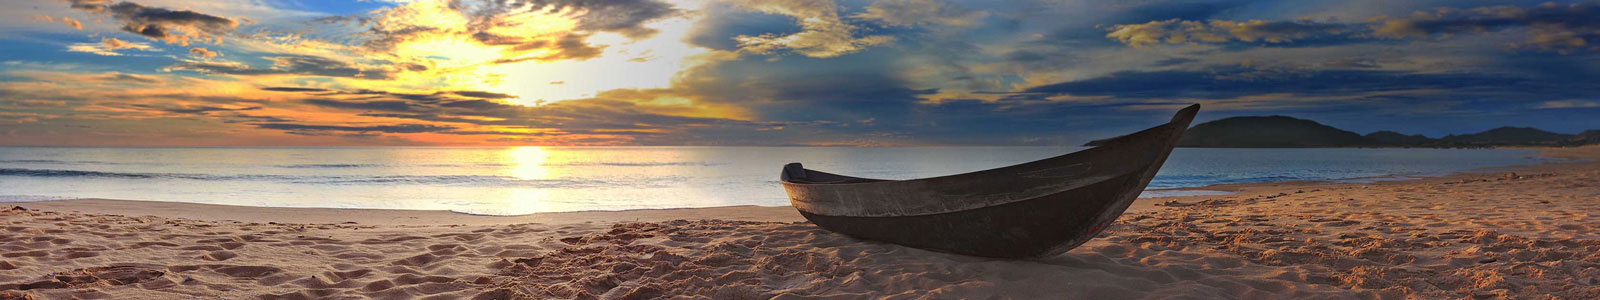 №5101 - Лодка рыбака на берегу в закат